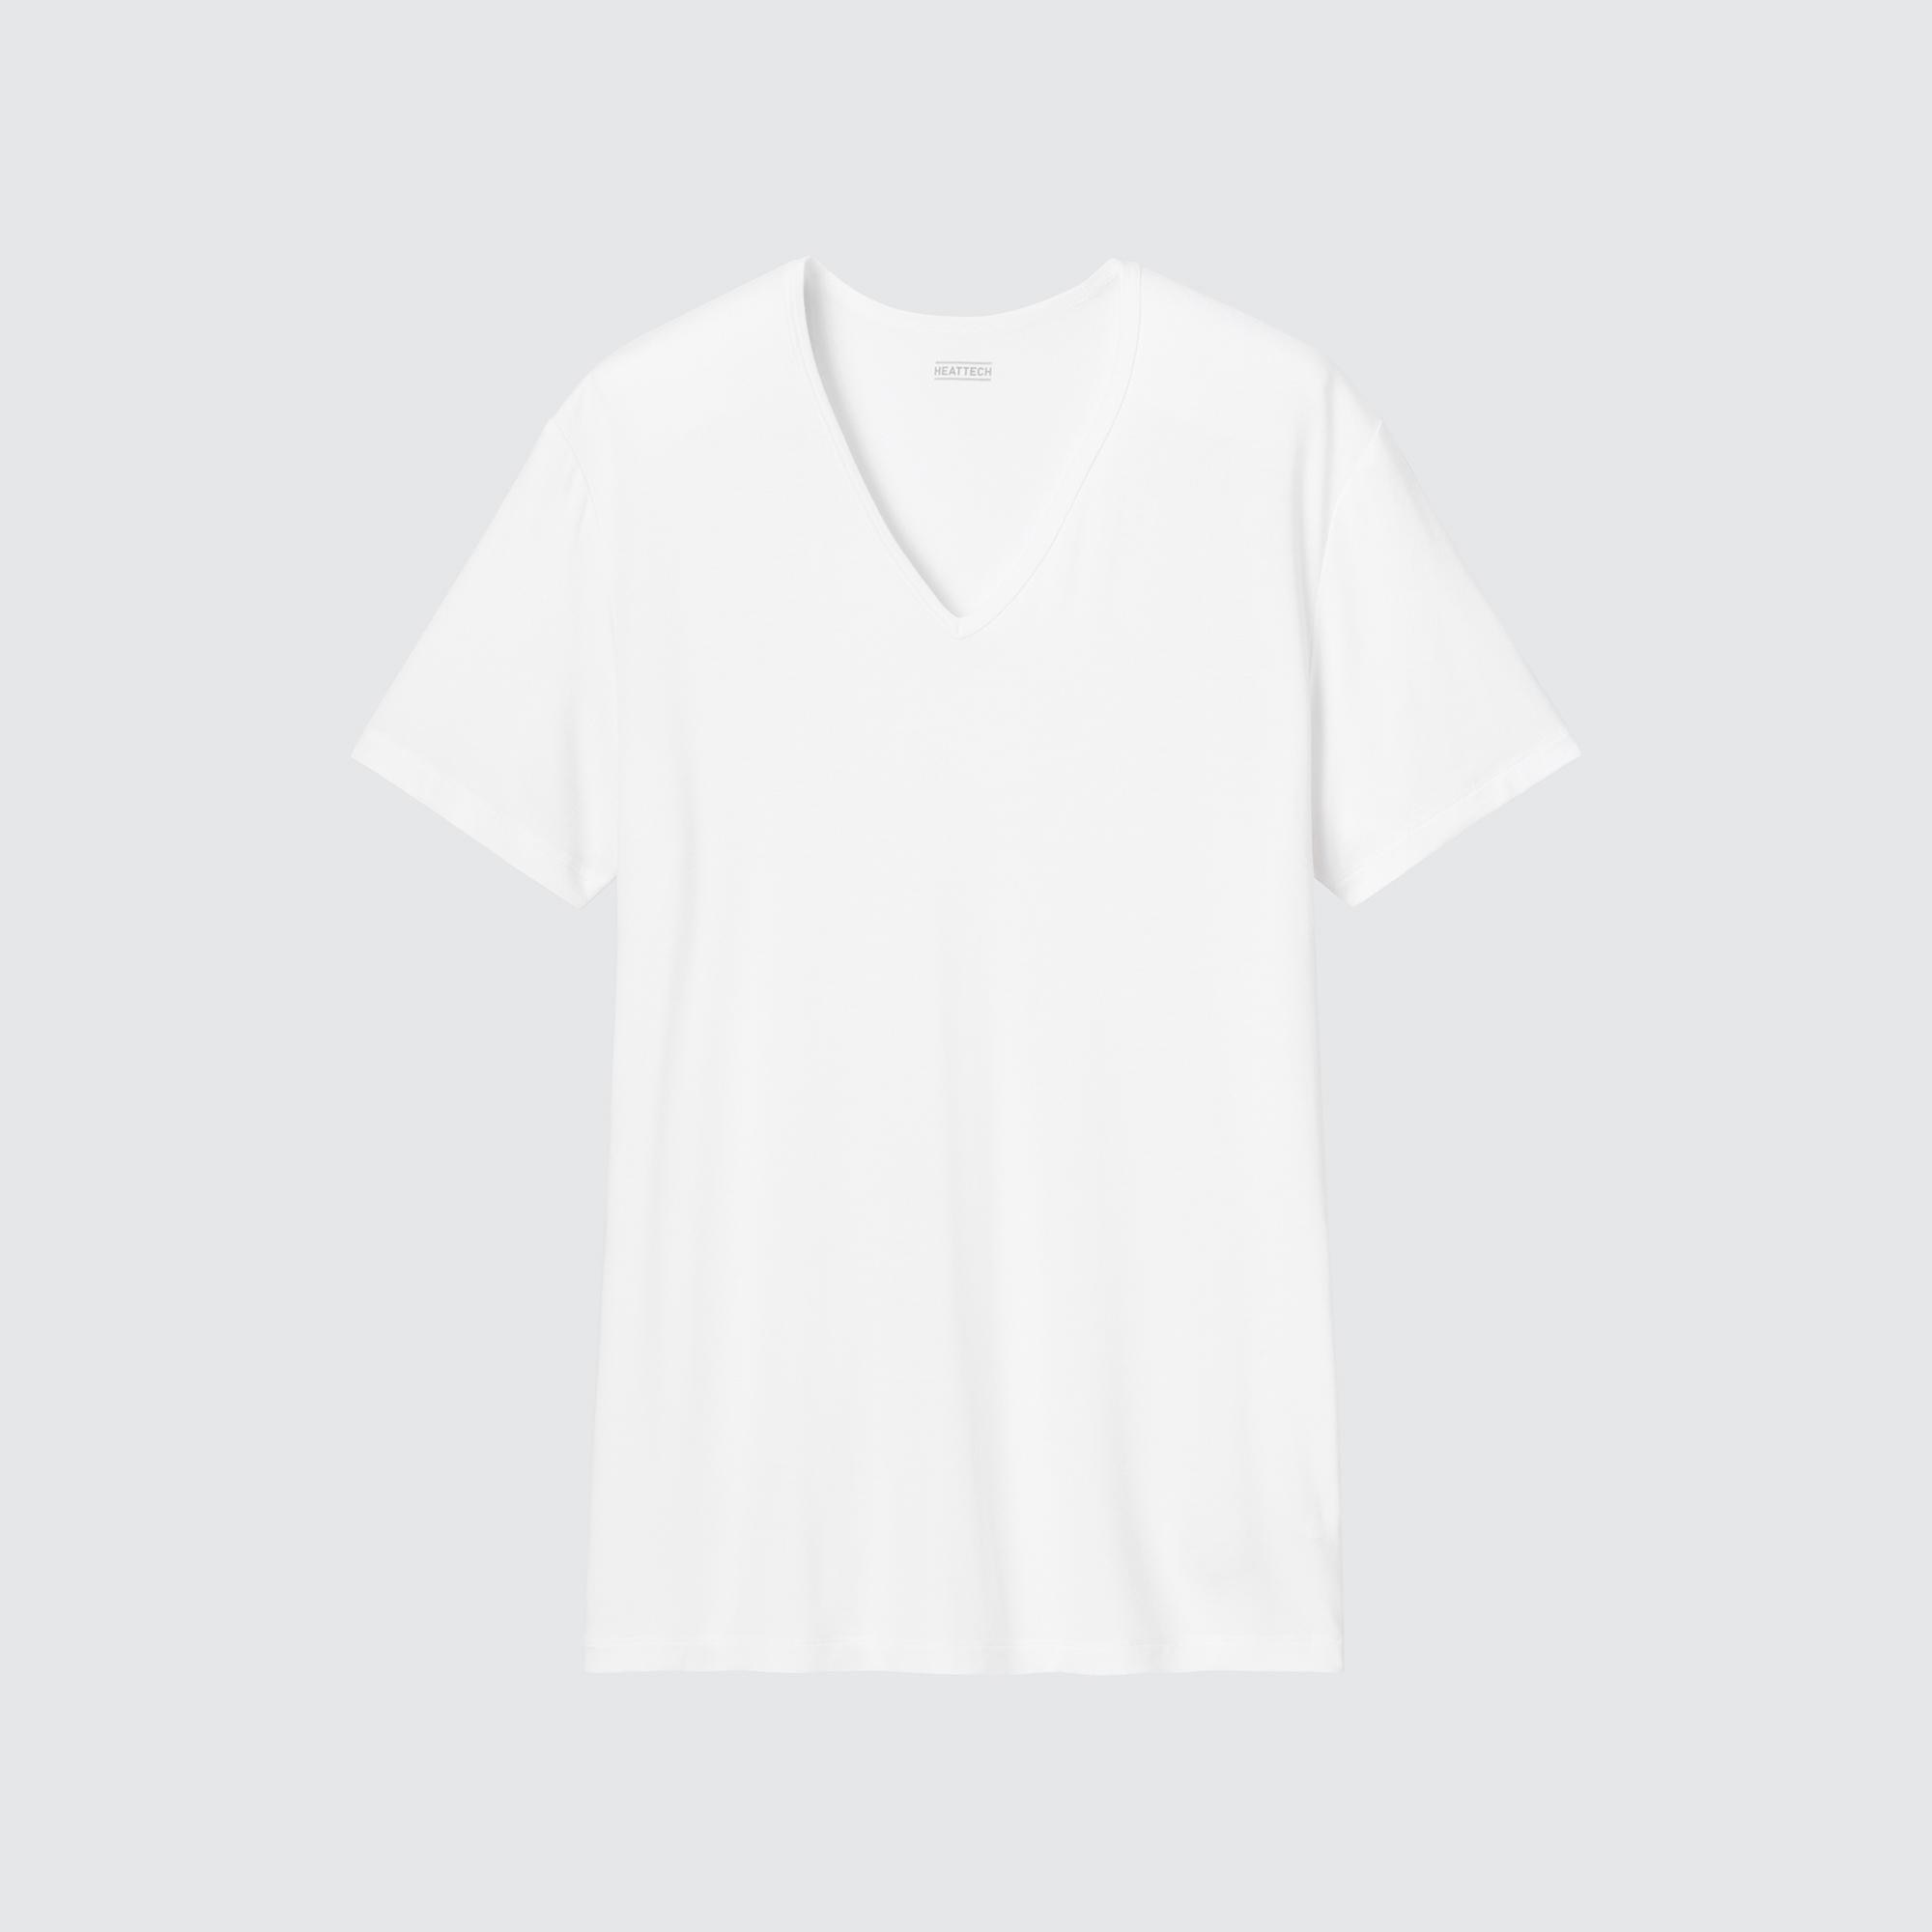 インナーシャツ メンズ おすすめの関連商品 ユニクロ